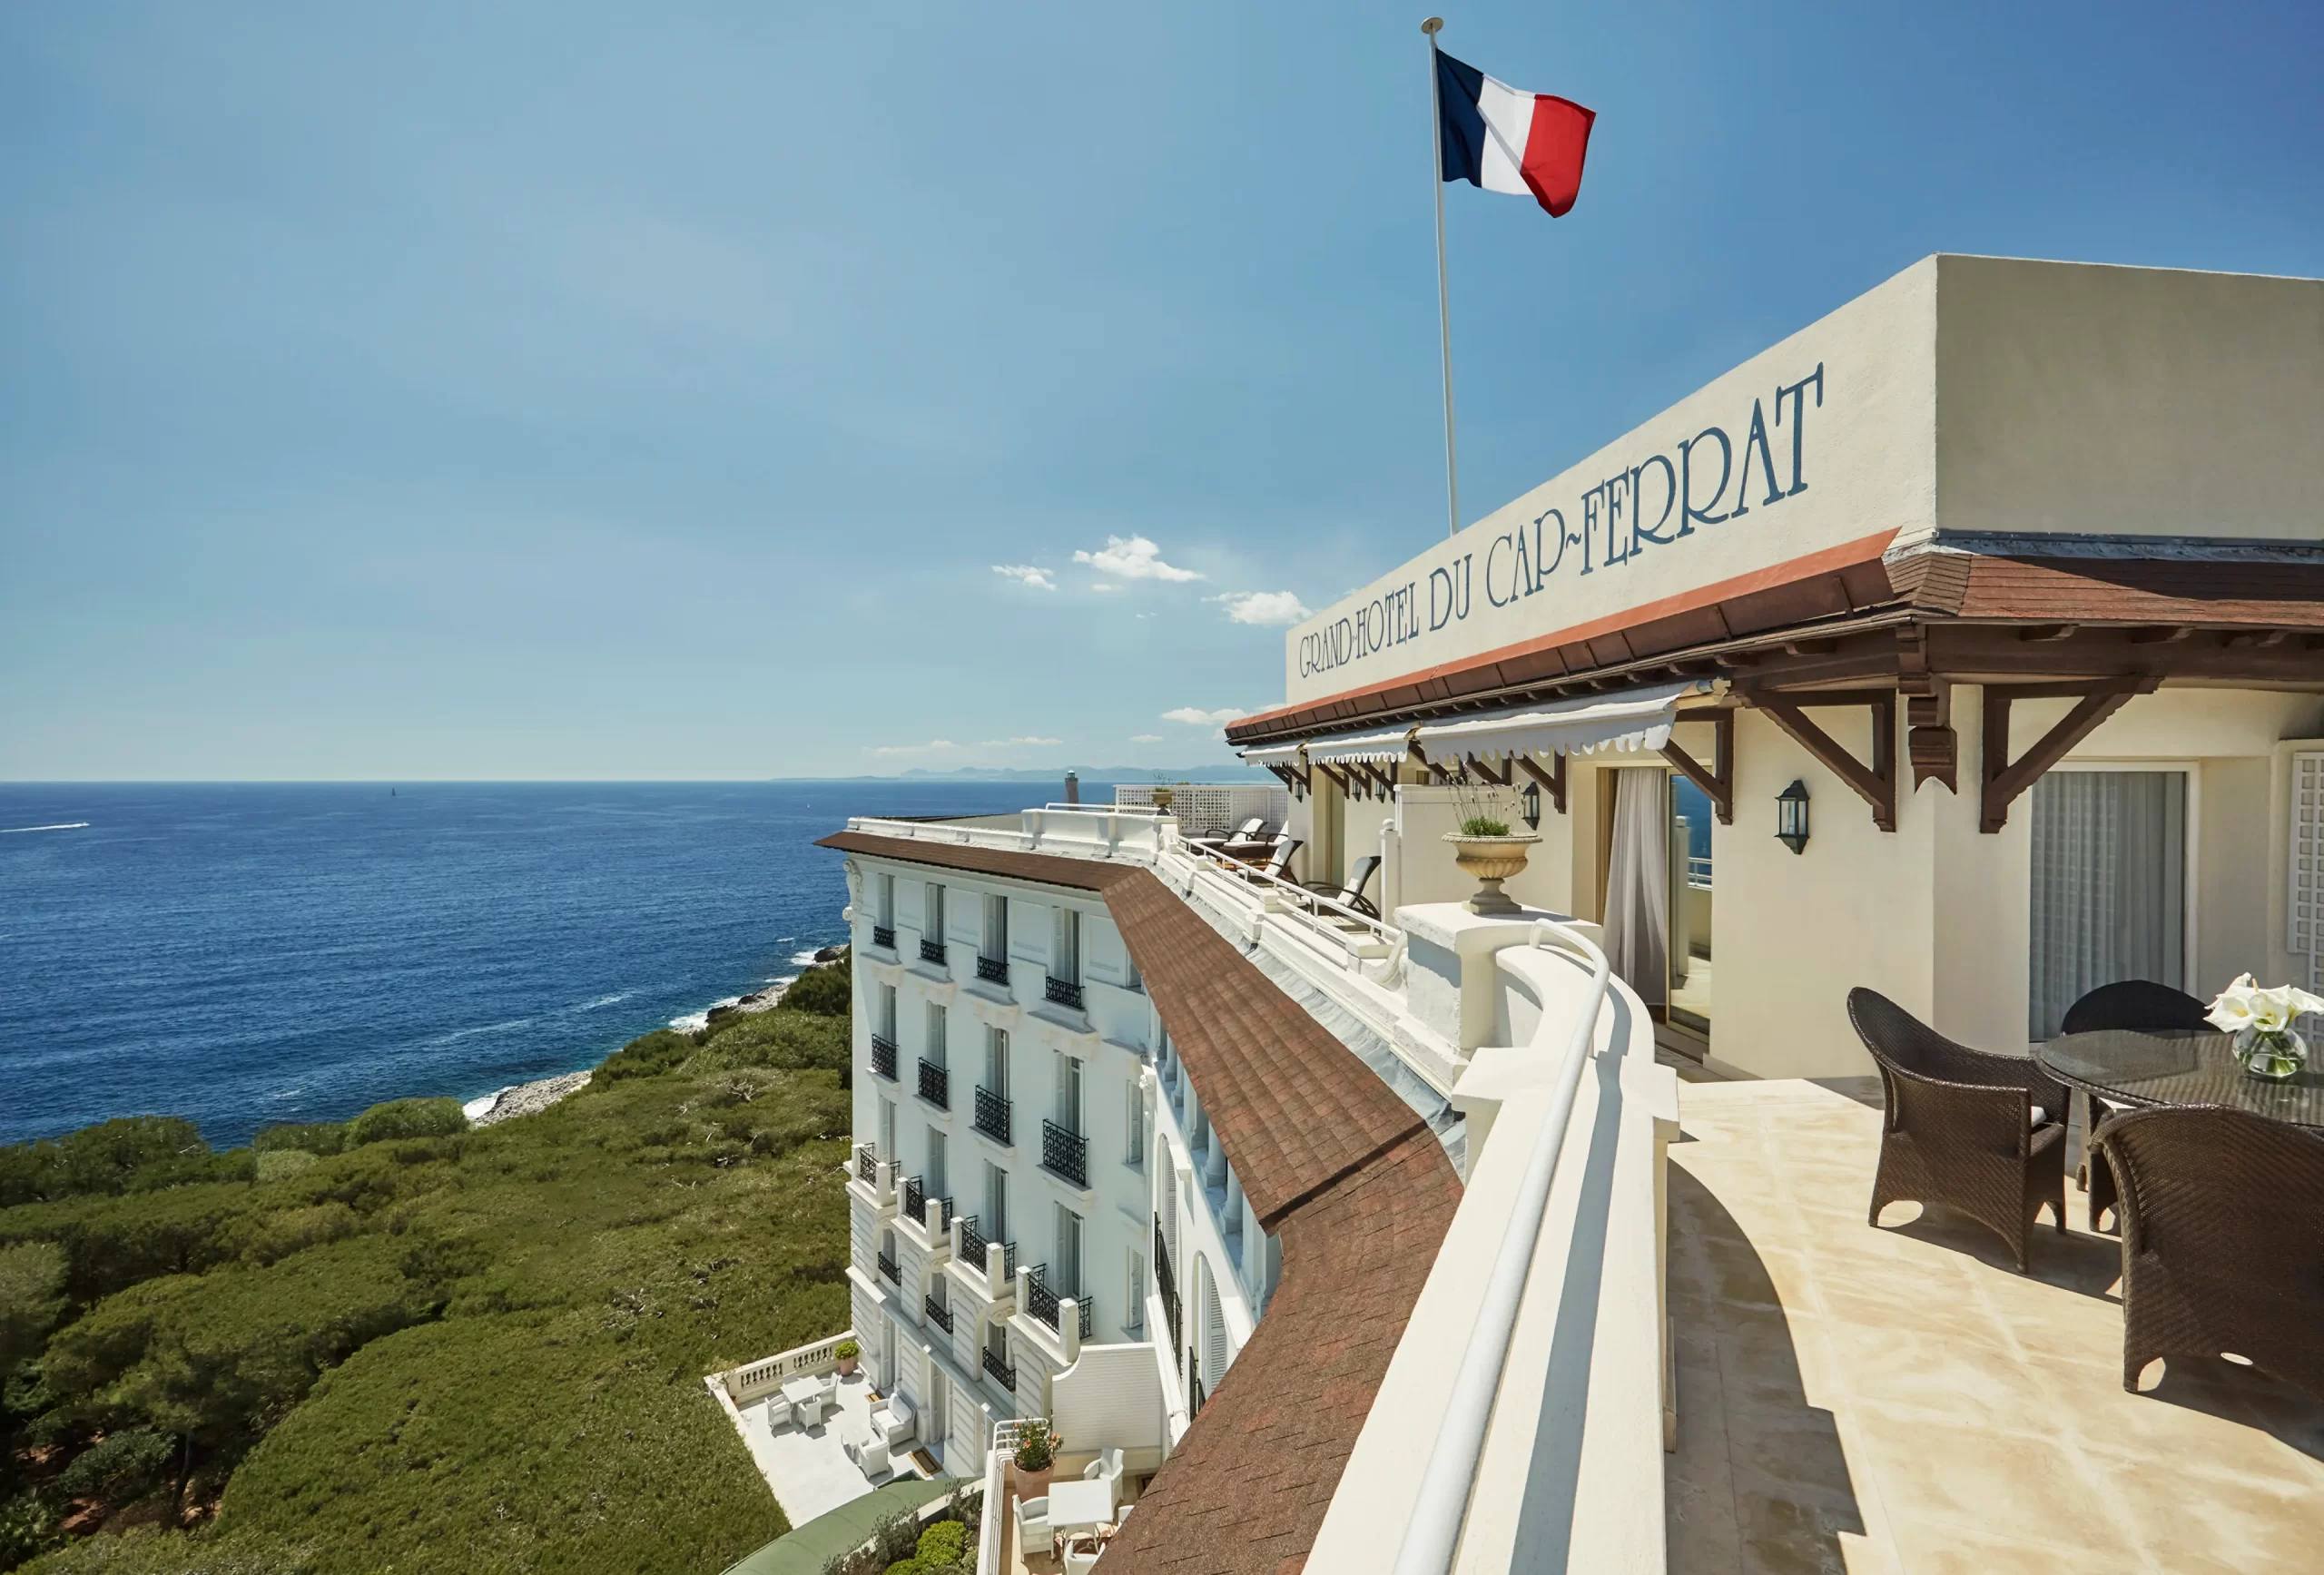 Grand-Hotel du Cap-Ferrat_France_Penthouse Suite Cocteau - 3 Bedrooms 01_VIP Trips For Kids